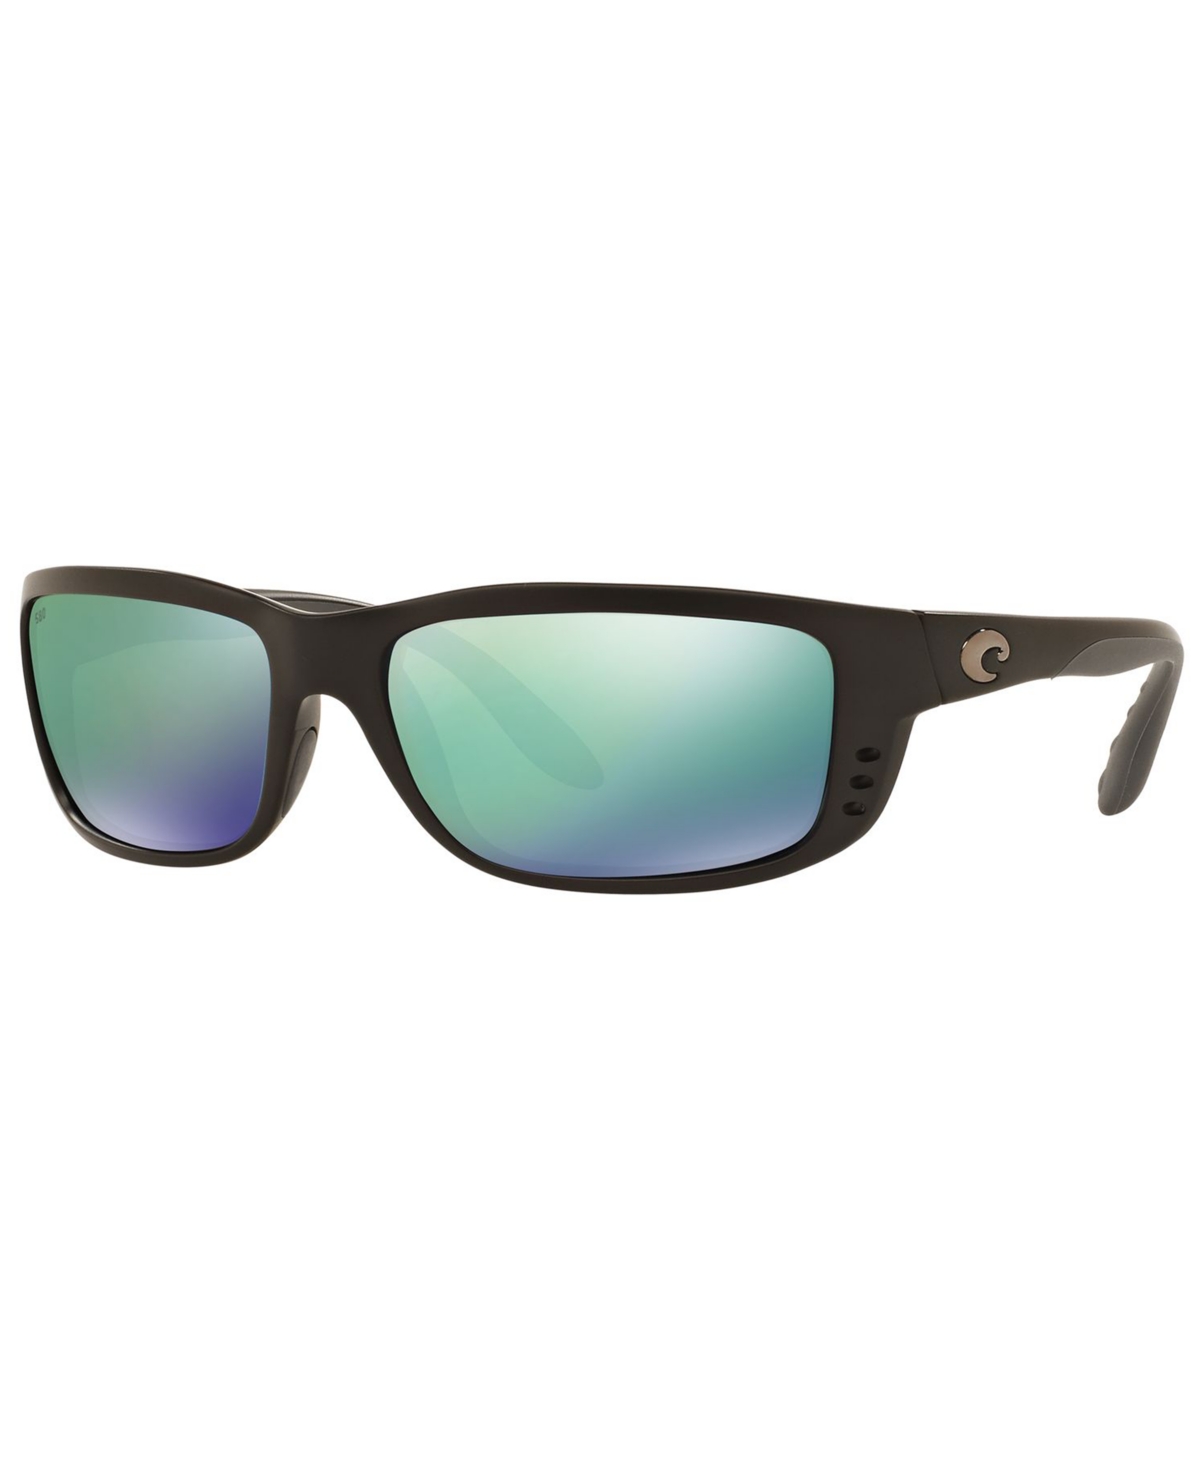 Costa Del Mar Polarized Sunglasses, Zane 61